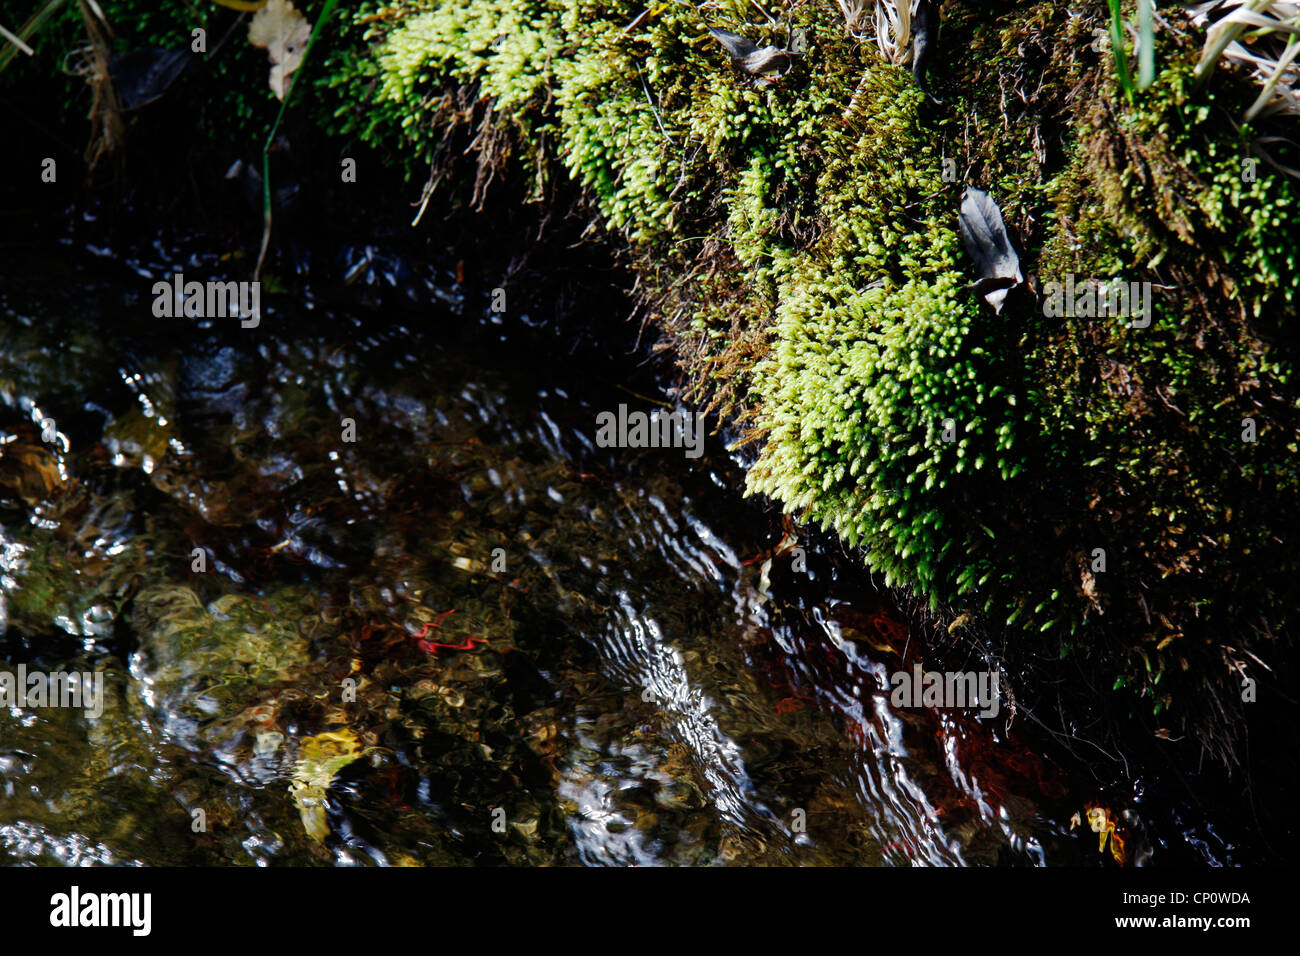 Mosses at the bank downstream of the Crystal pool, Riwaka Resurgence. Stock Photo